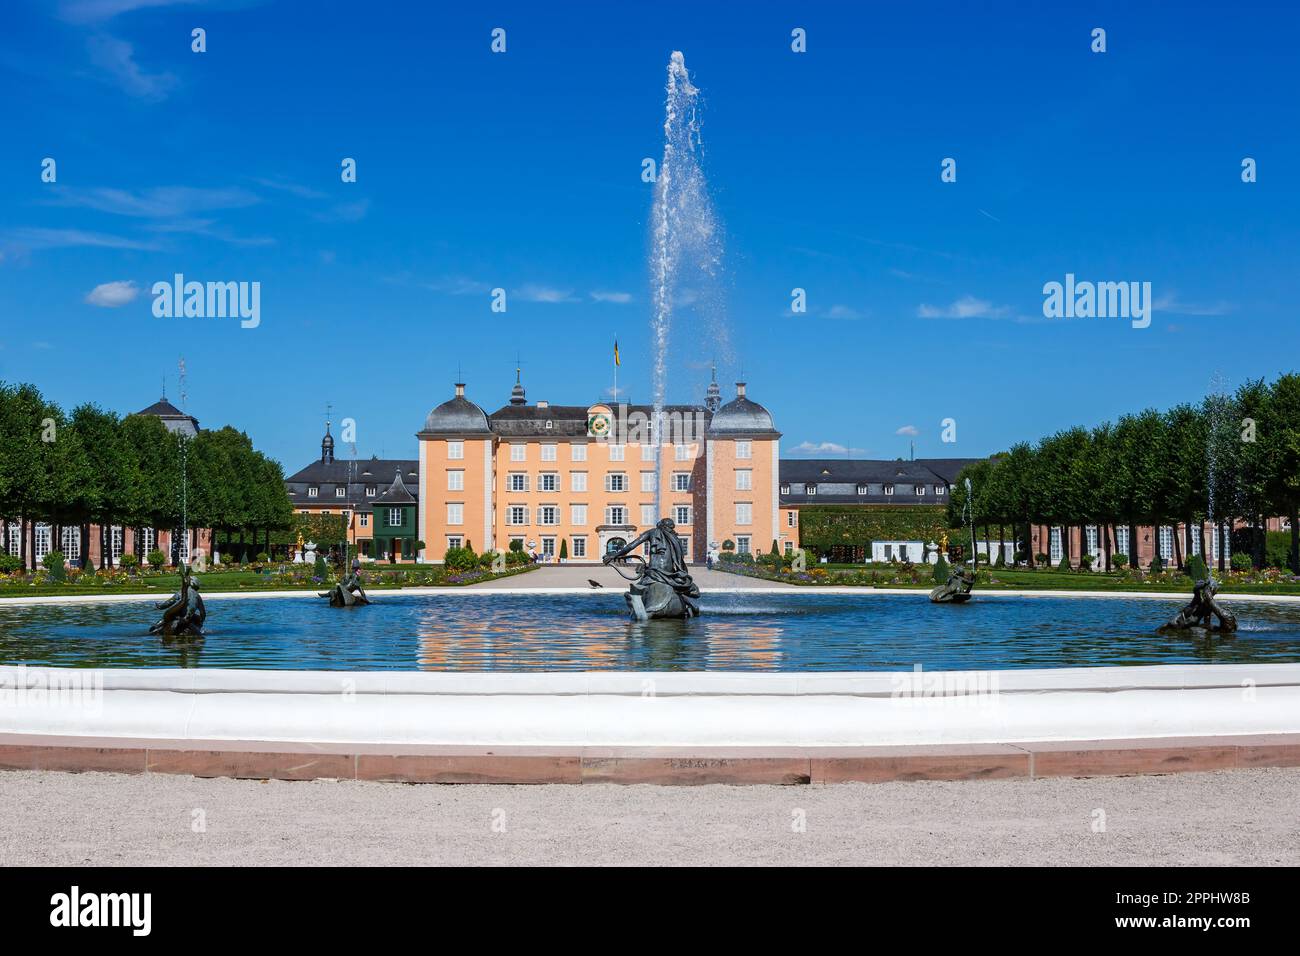 Schloss Schwetzingen mit Springbrunnen in einer Gartenparkarchitektur Reisen Sie in Deutschland Stockfoto